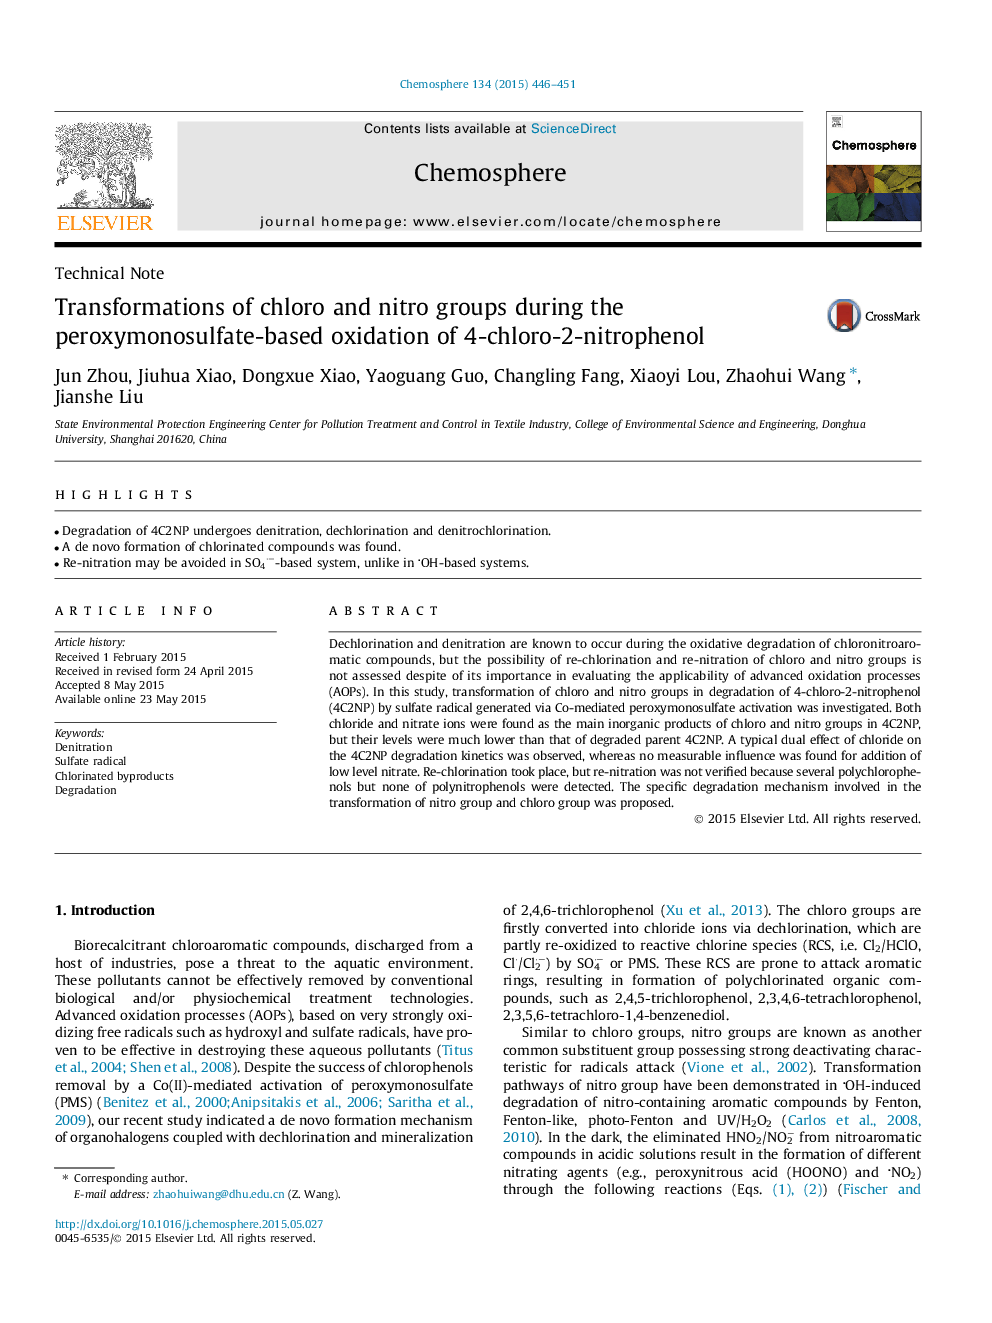 ترانسفوزیون های کلرو و نیترو در اکسیداسیون 4-کلرو-2-نیترفون 